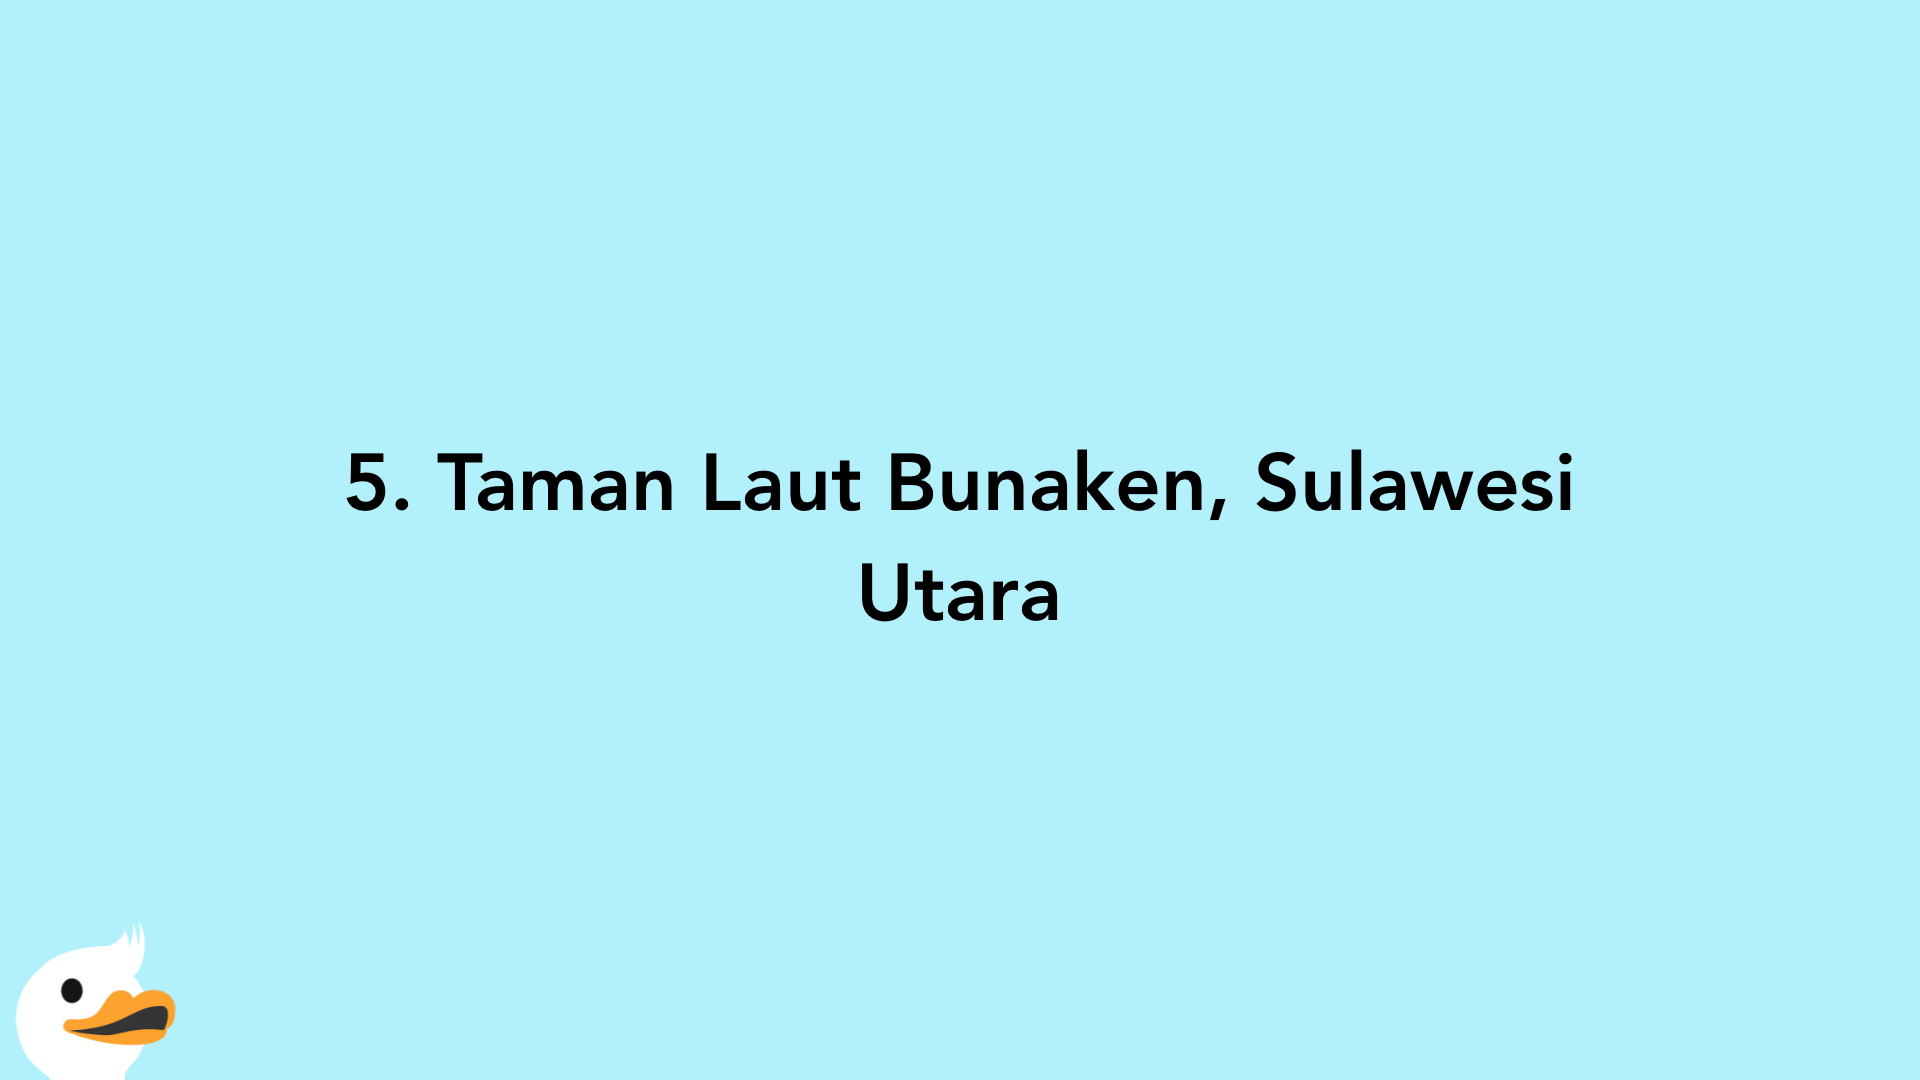 5. Taman Laut Bunaken, Sulawesi Utara